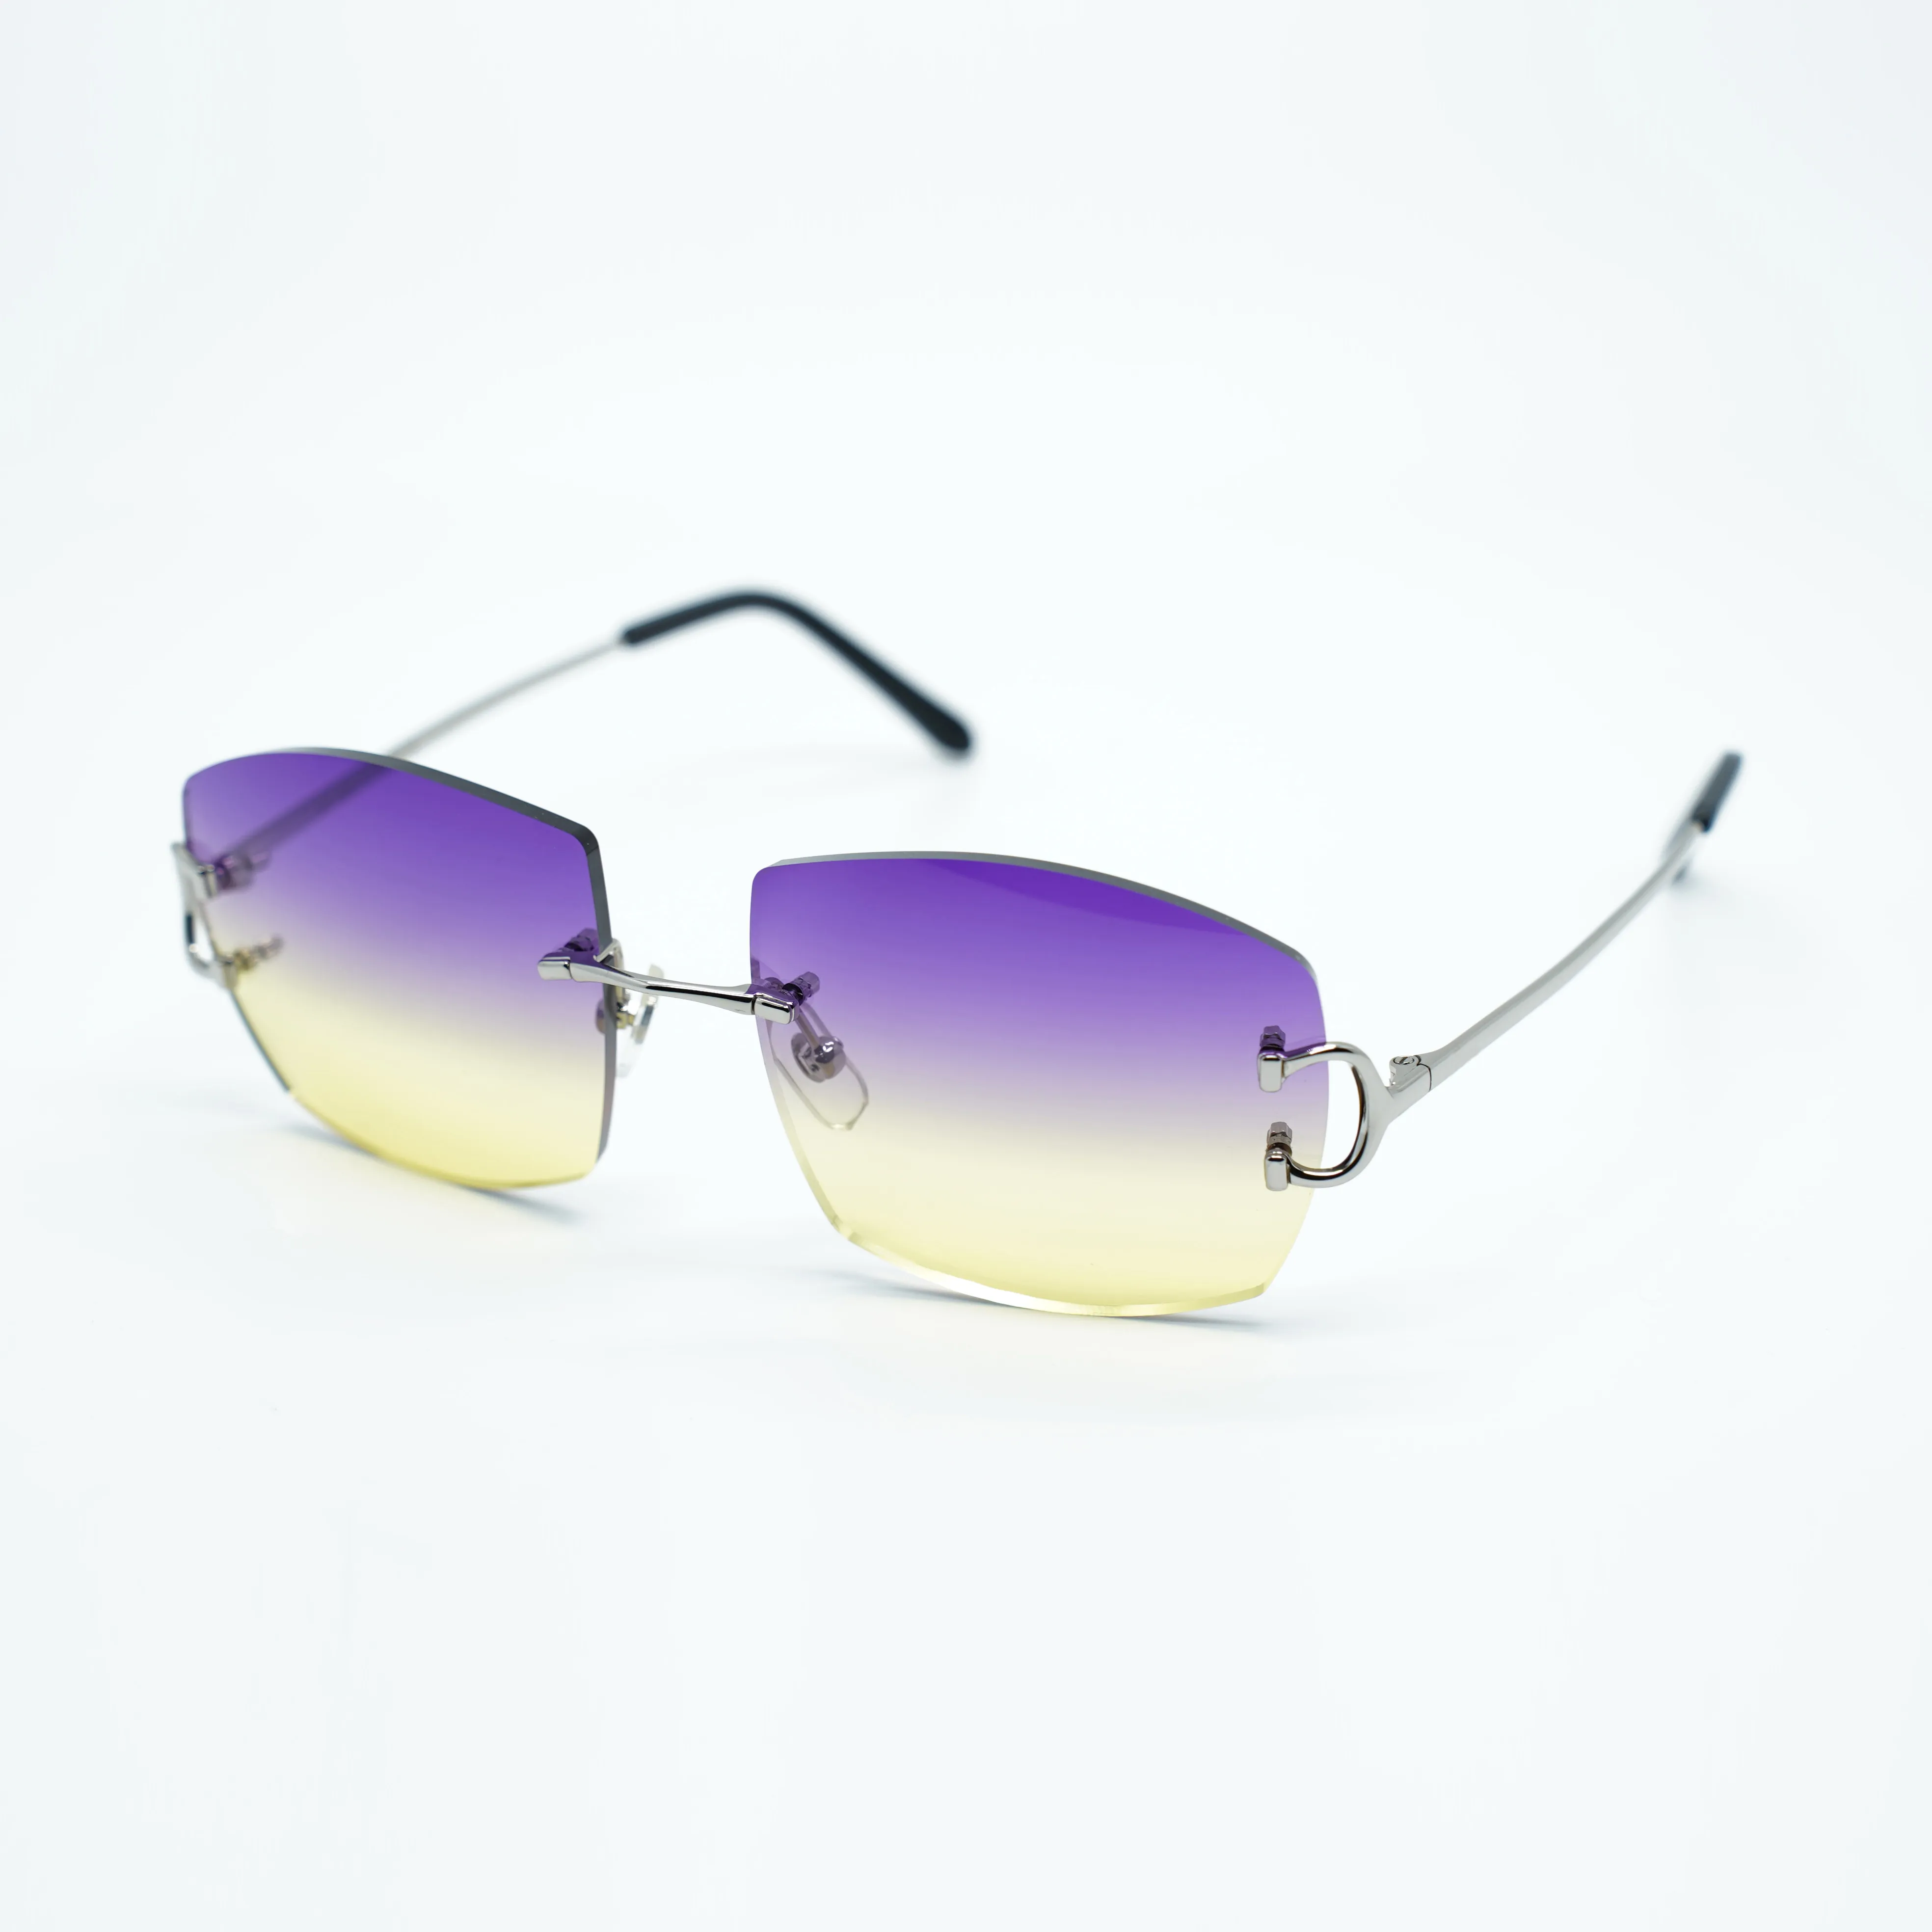 Ny Metal Claw Wire Solglasögon A4189706 med 60 mm objektiv 3,0 mm tjocklek Bästa kvalitet